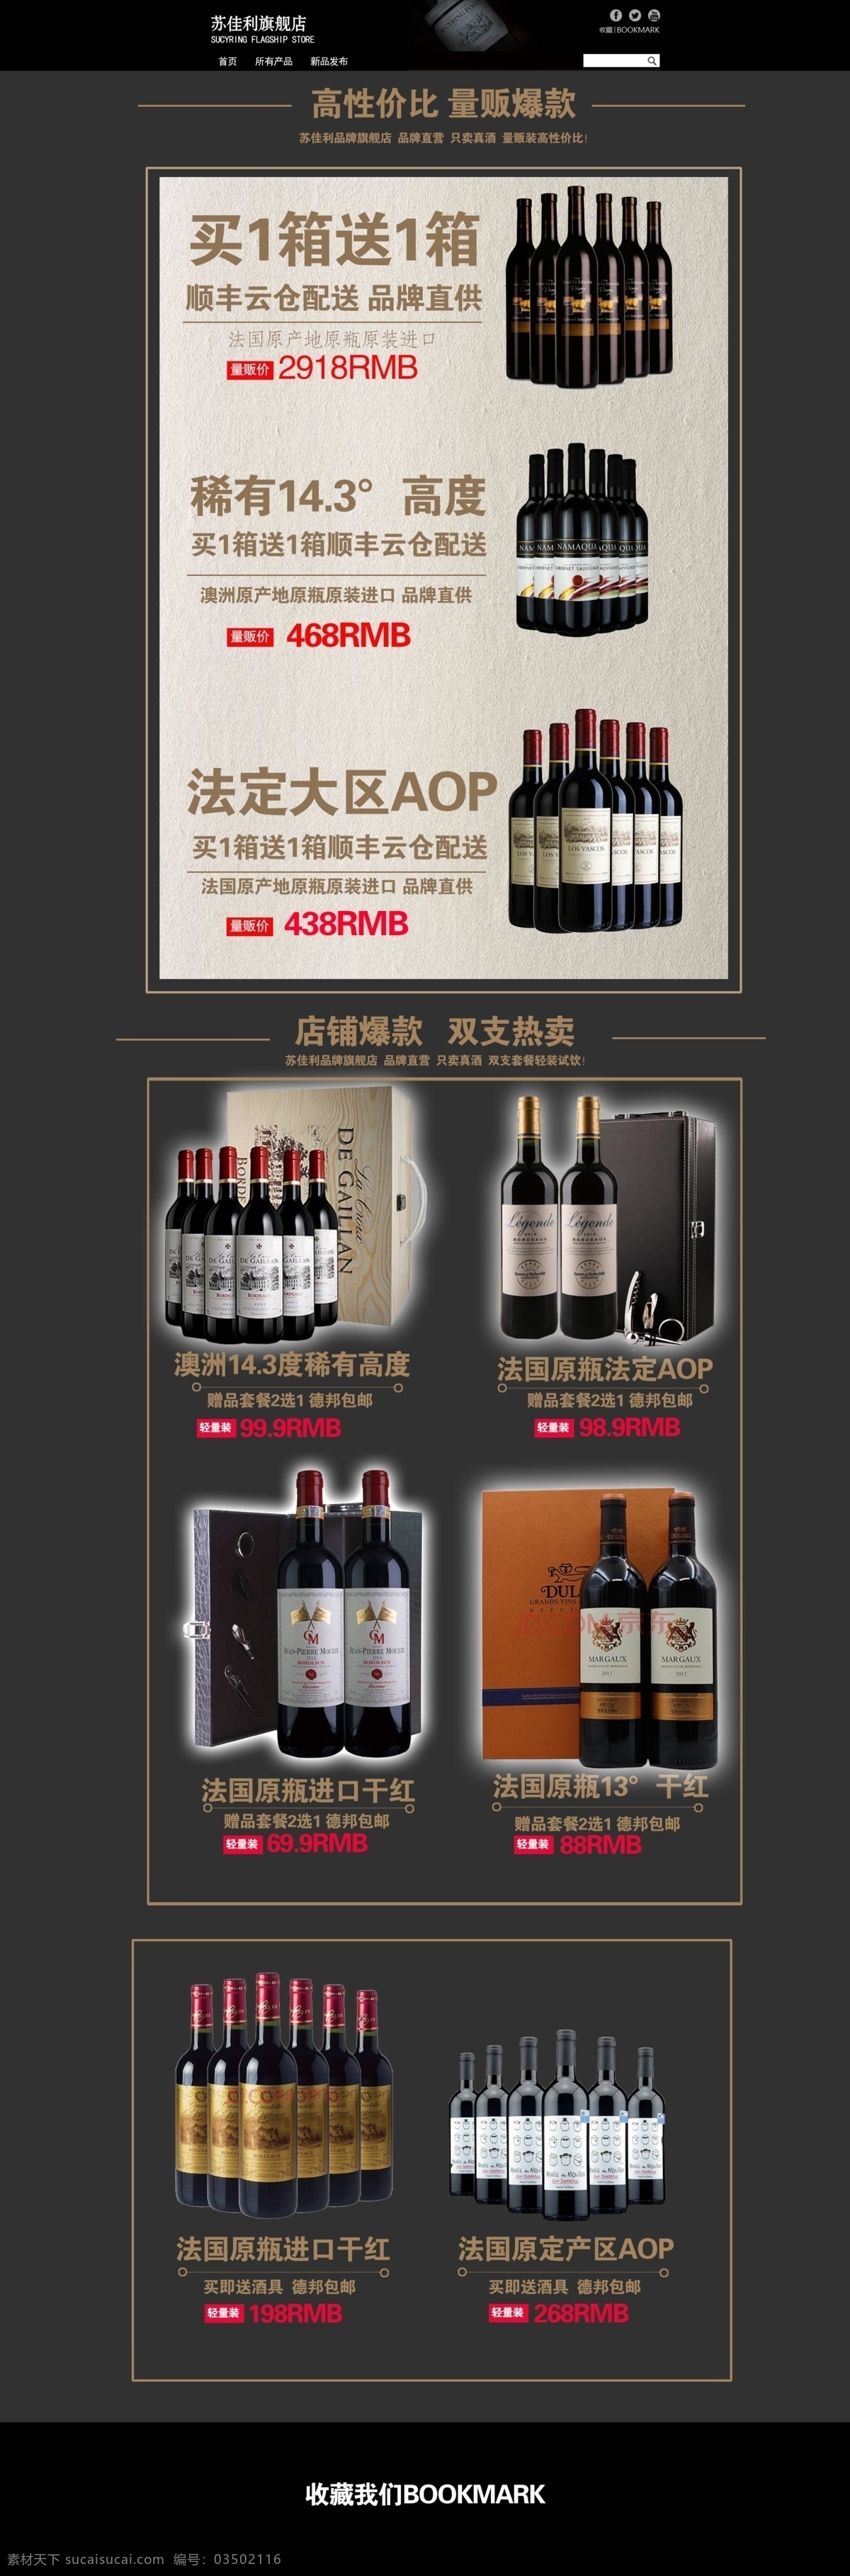 红酒网站图片 红酒 模版 高端 网站 web 界面设计 中文模板